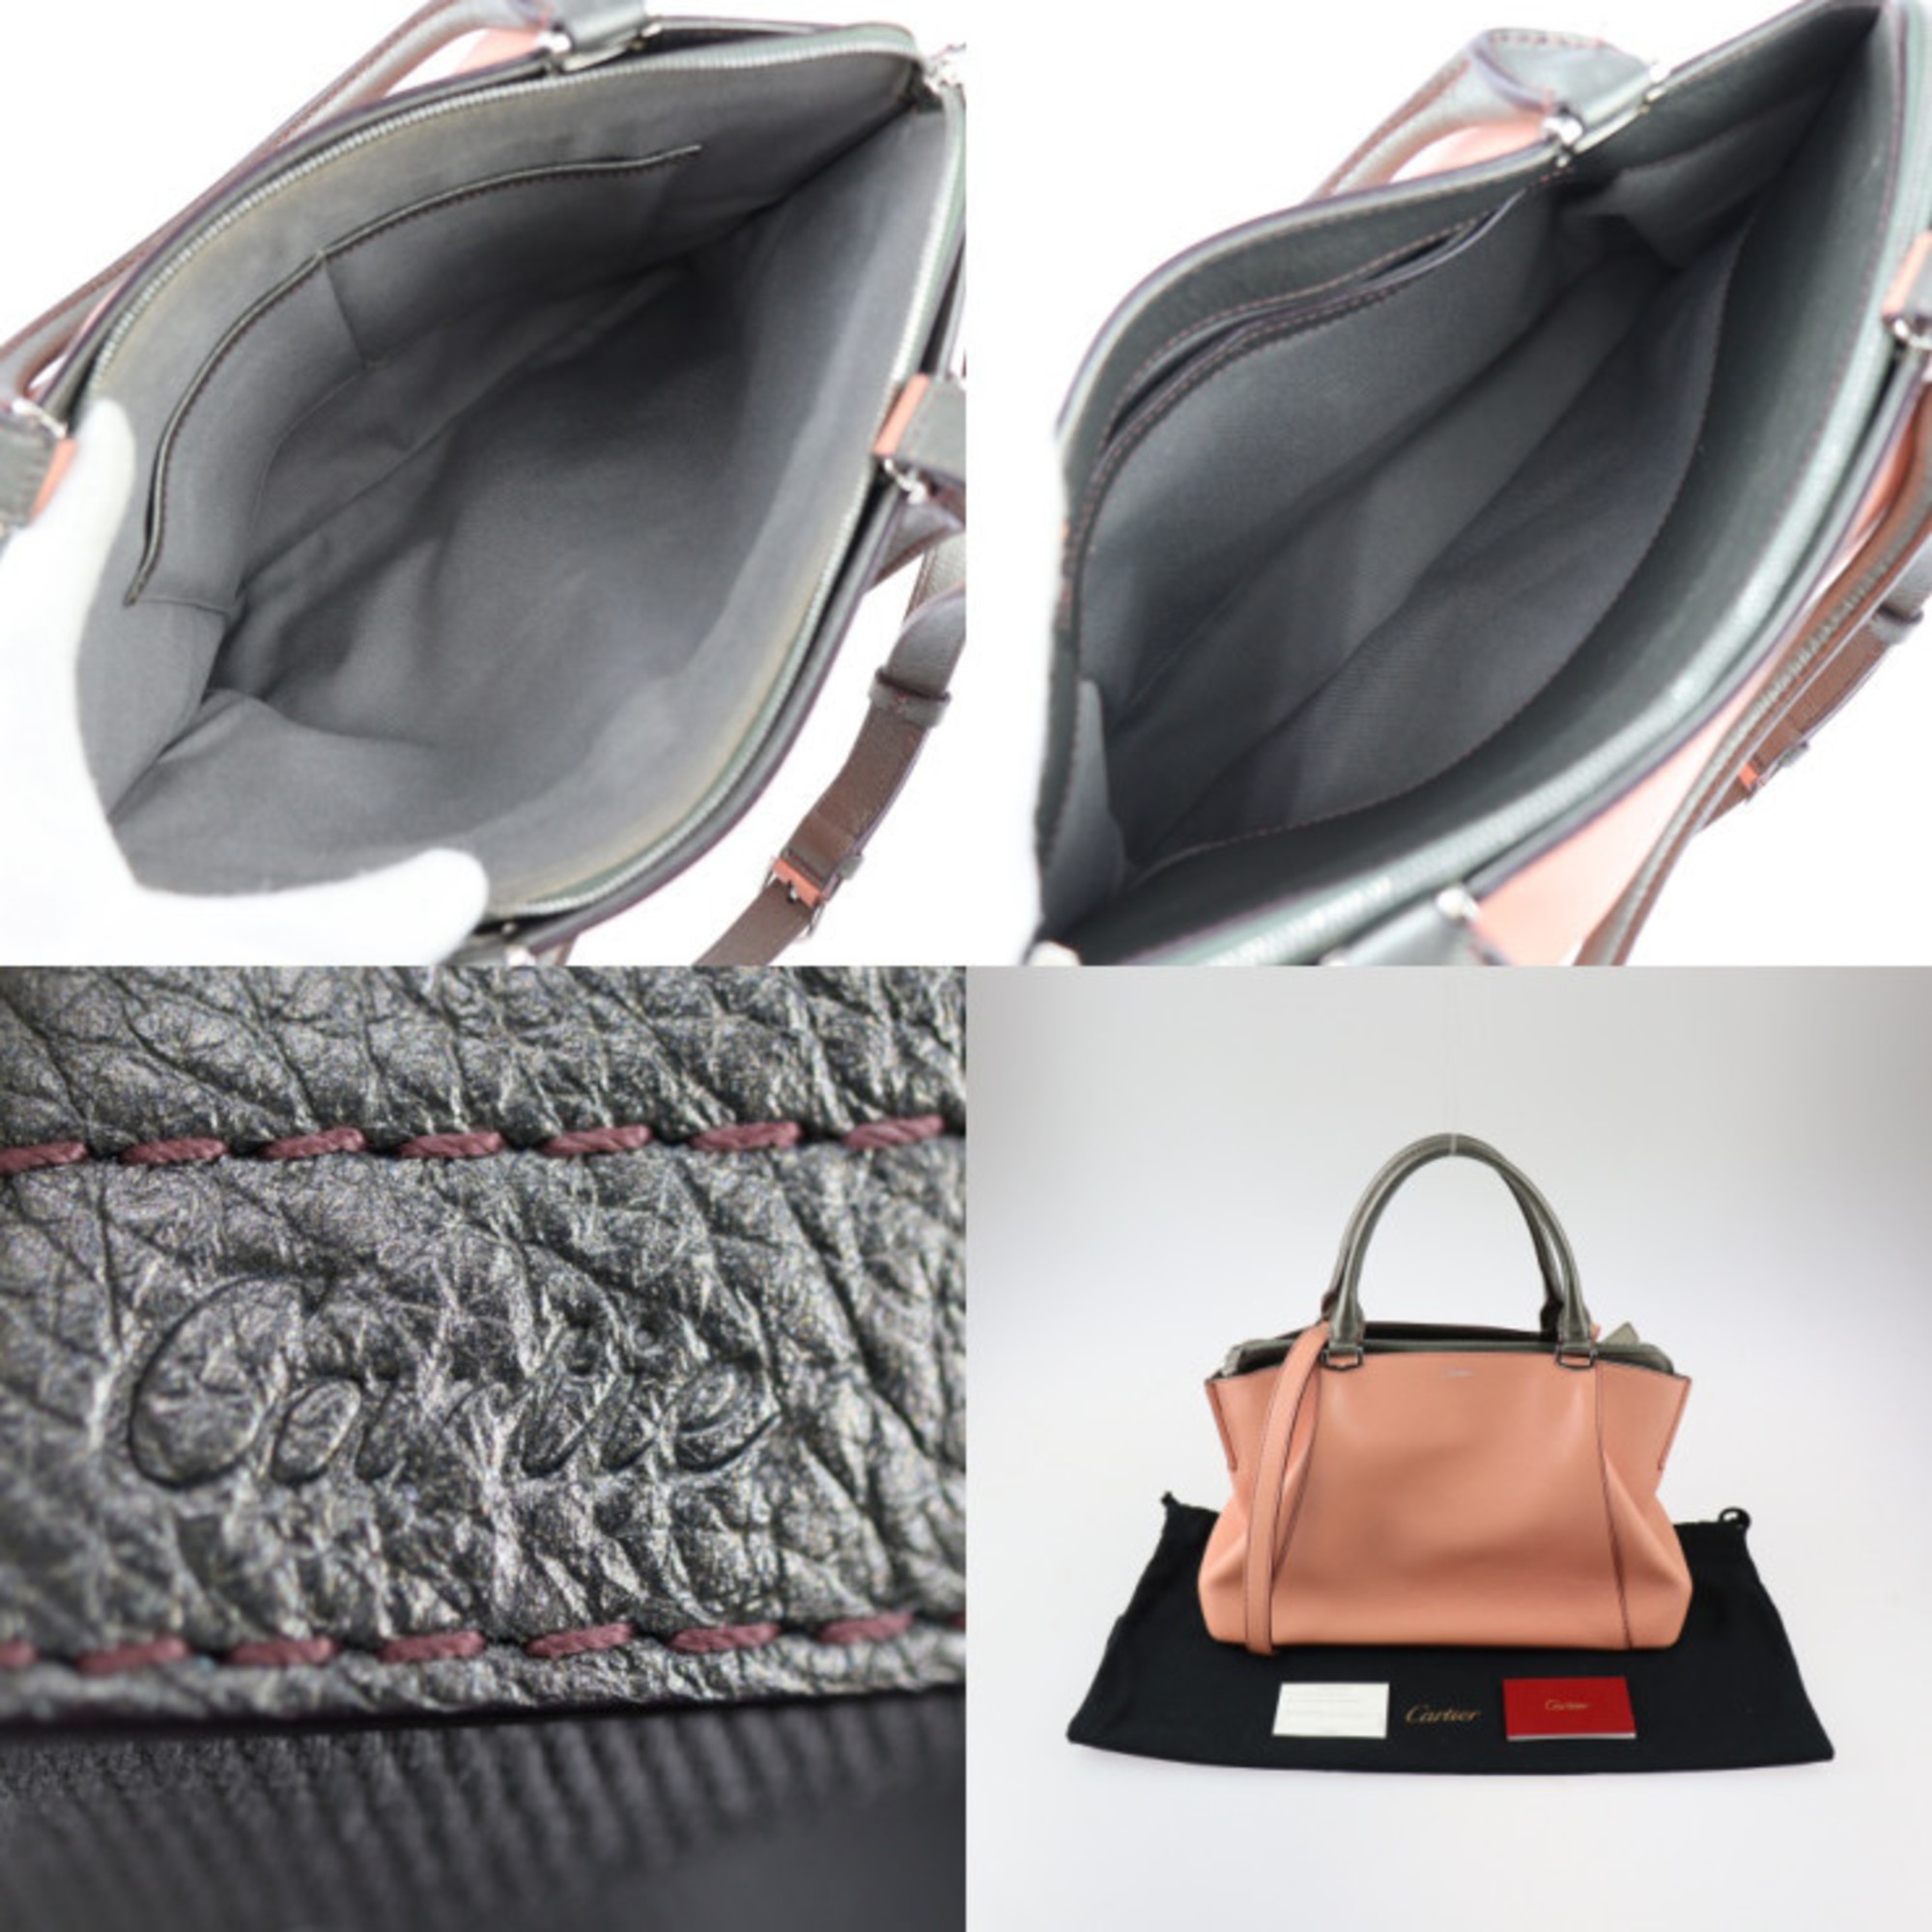 CARTIER C de Cartier SM handbag leather coral pink gunmetallic silver hardware 2WAY shoulder bag bicolor